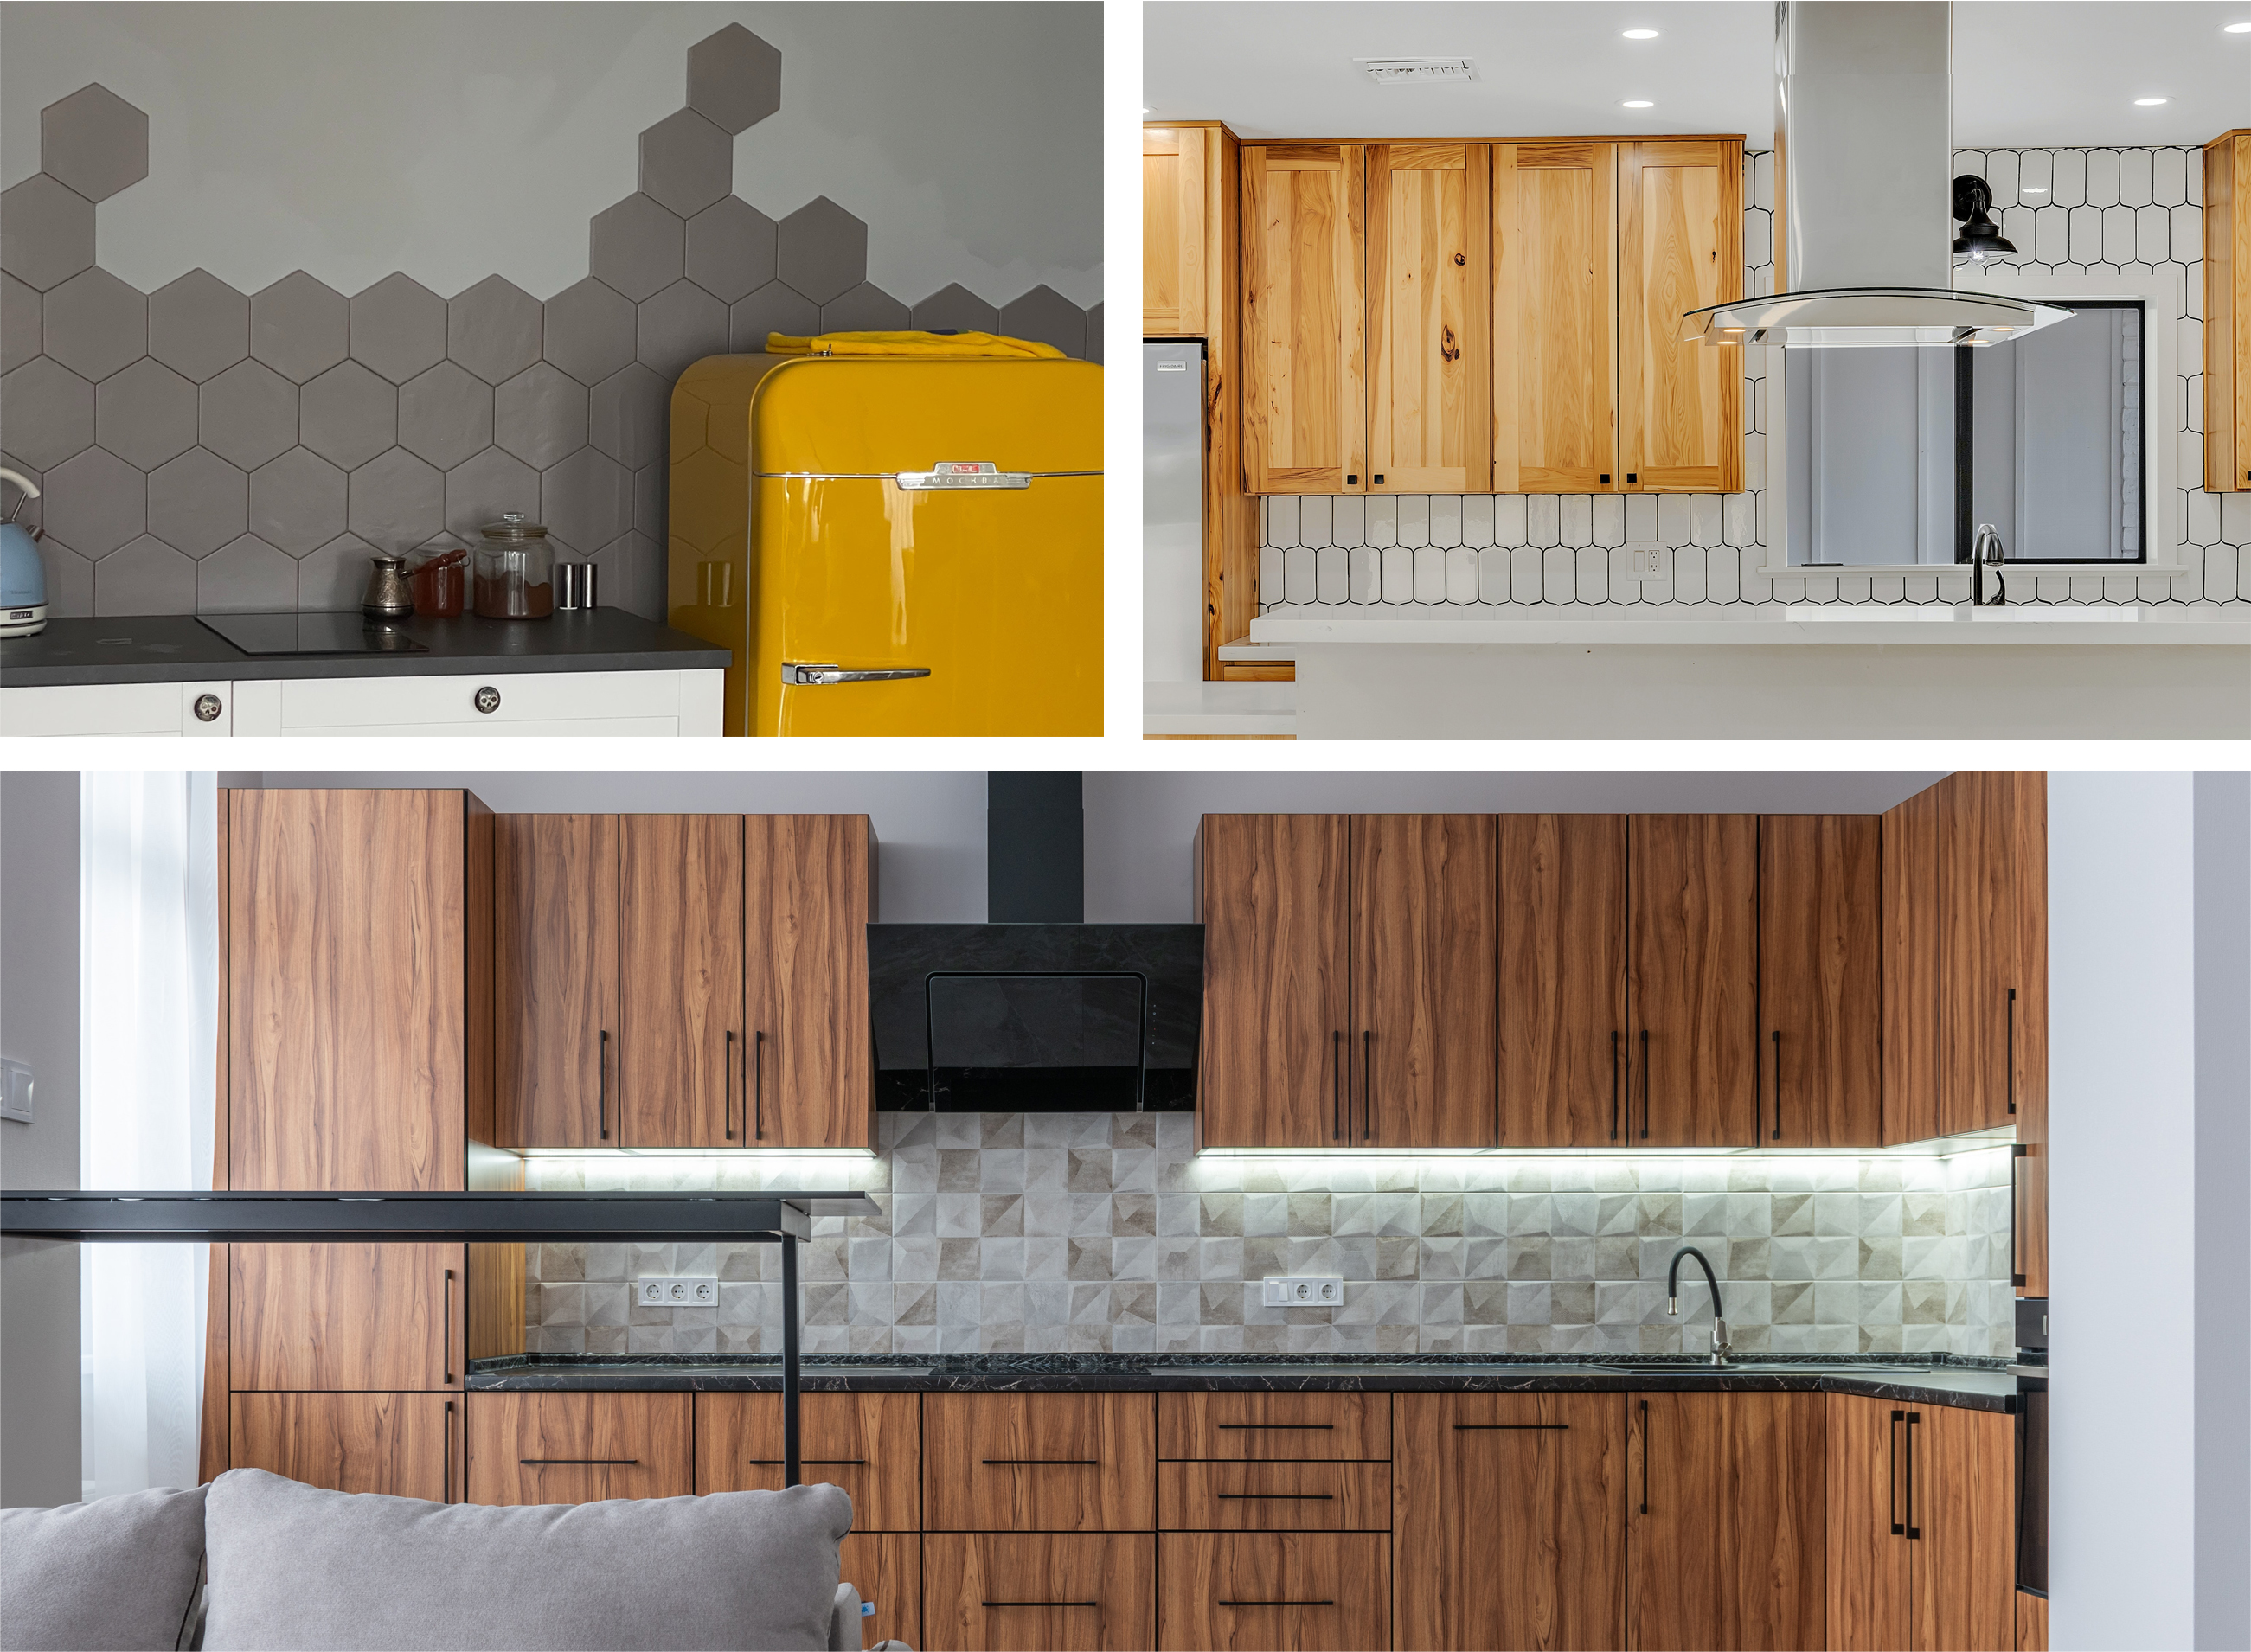 Kitchen design trend, unique tile shapes